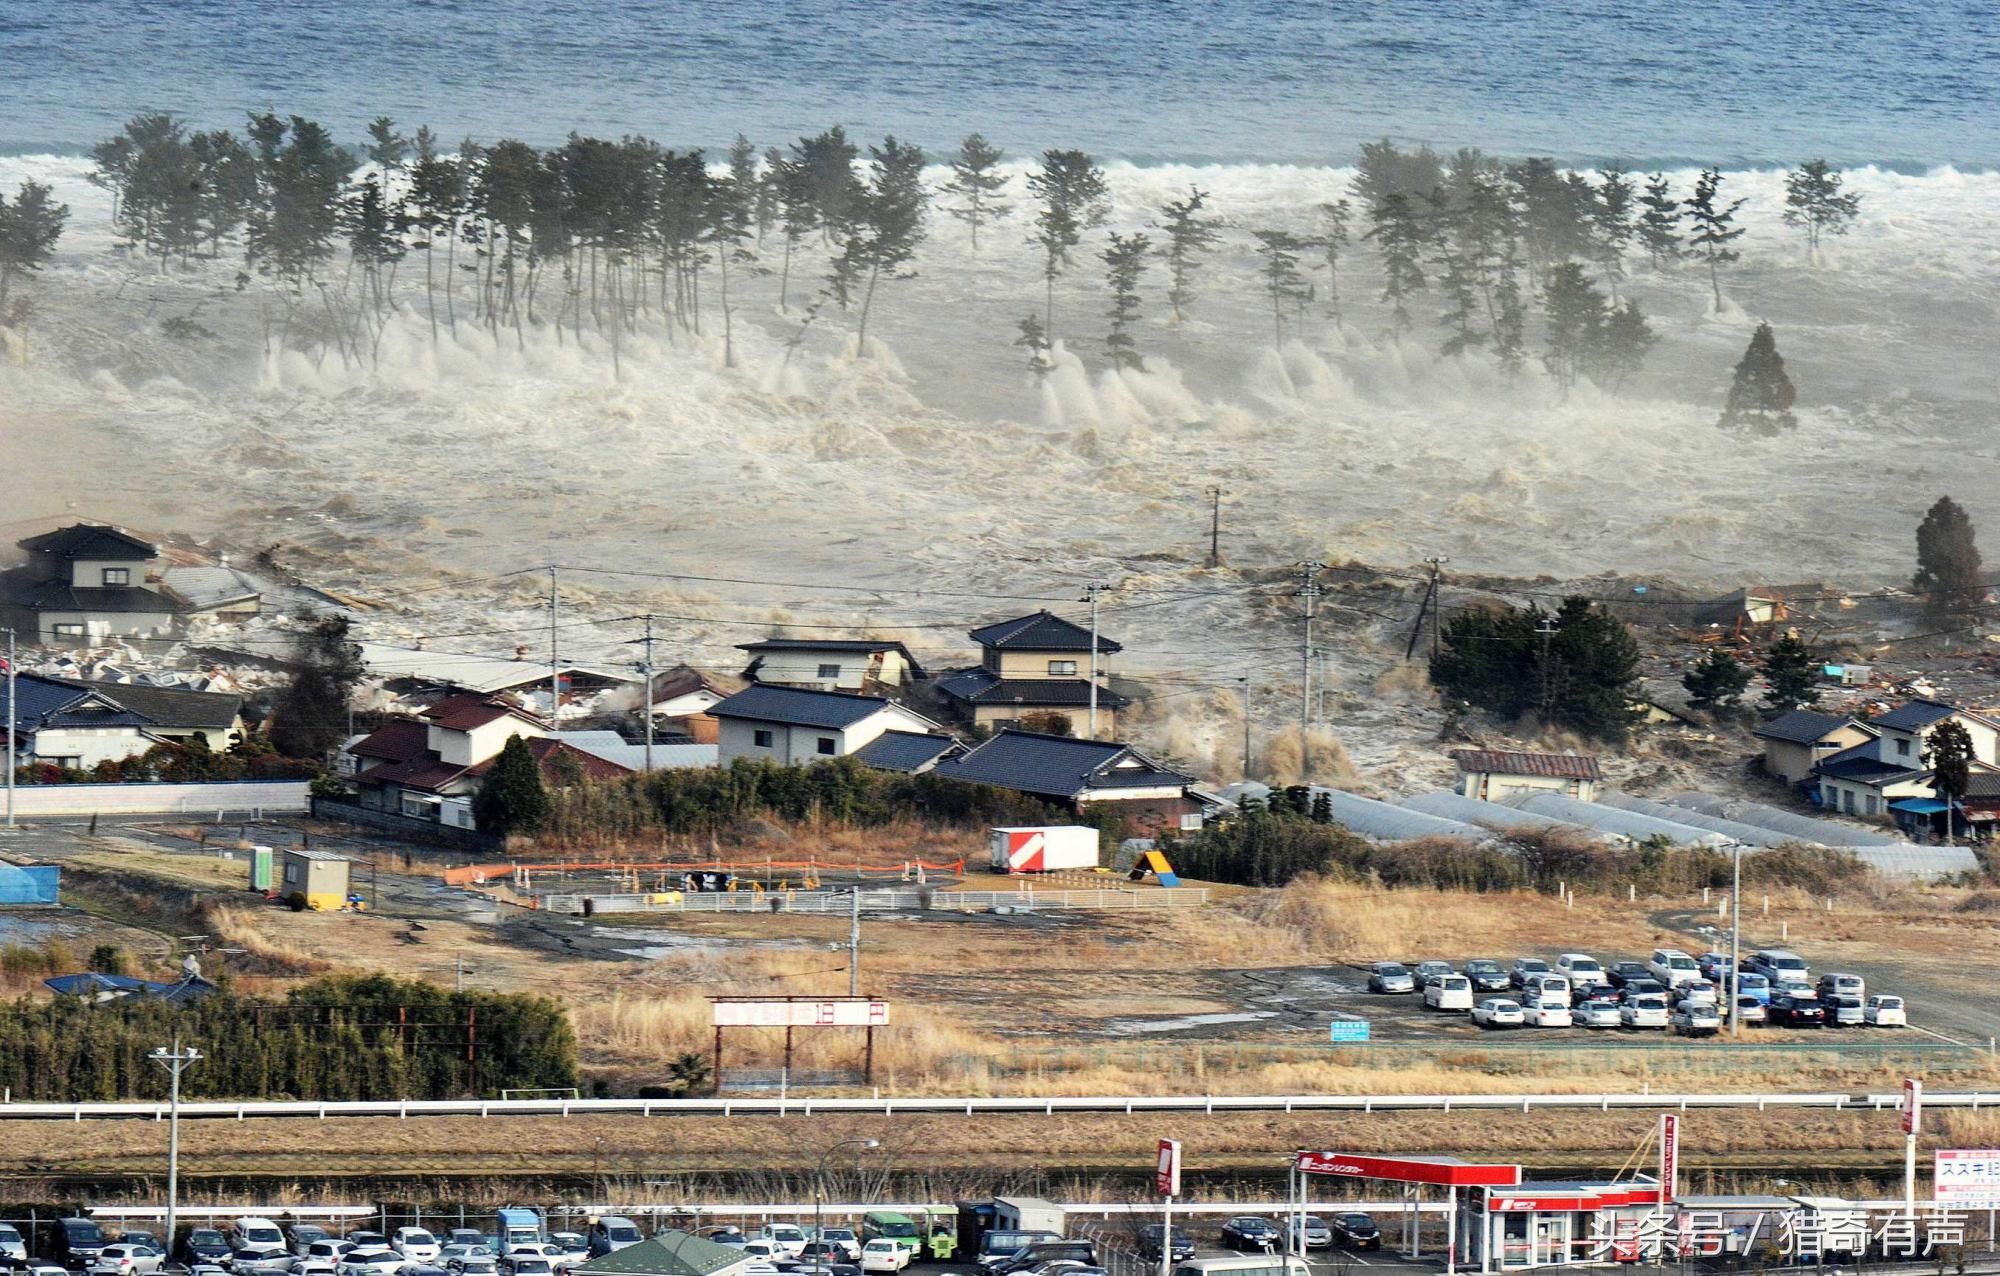 日本那年9级地震海啸还不够!这次又来南海海沟